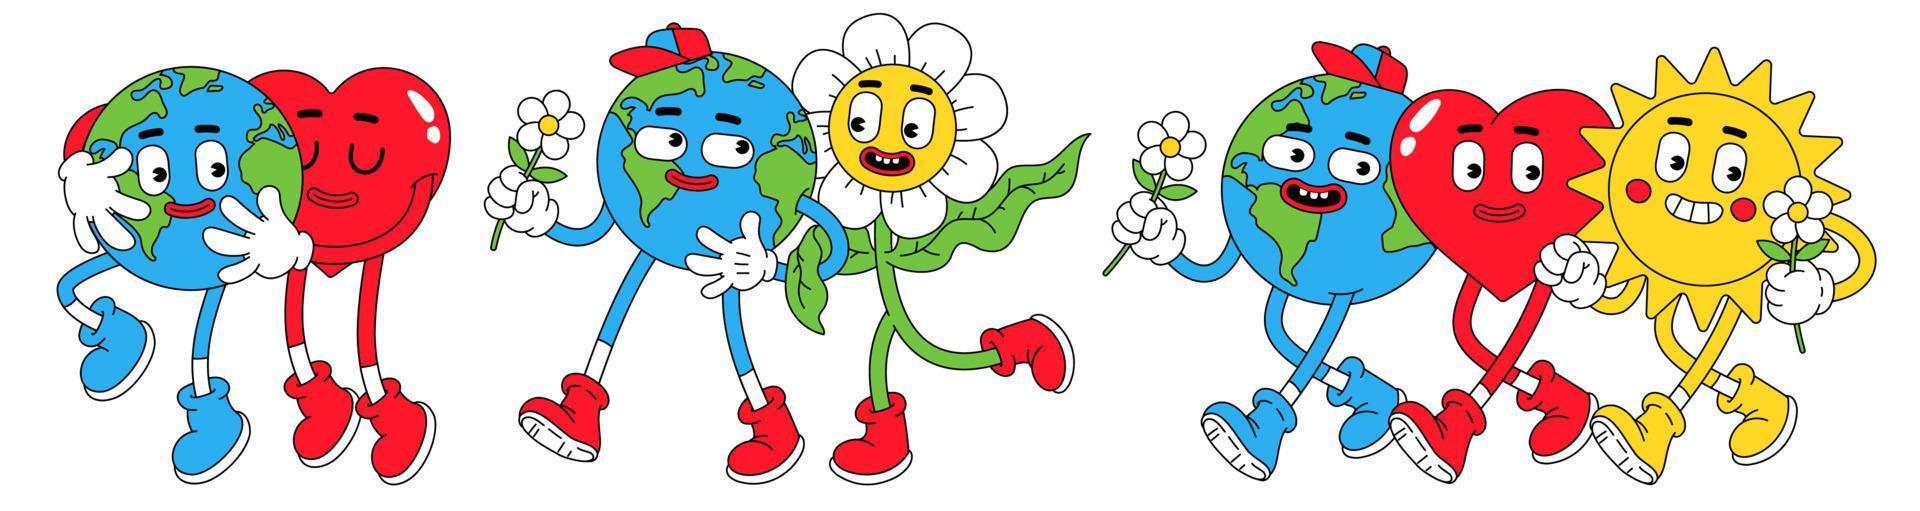 terre, paix, amour dans un style cartoon rétro tendance. globe drôle, coeur, soleil, planète, personnages de fleurs avec visage souriant. vecteur